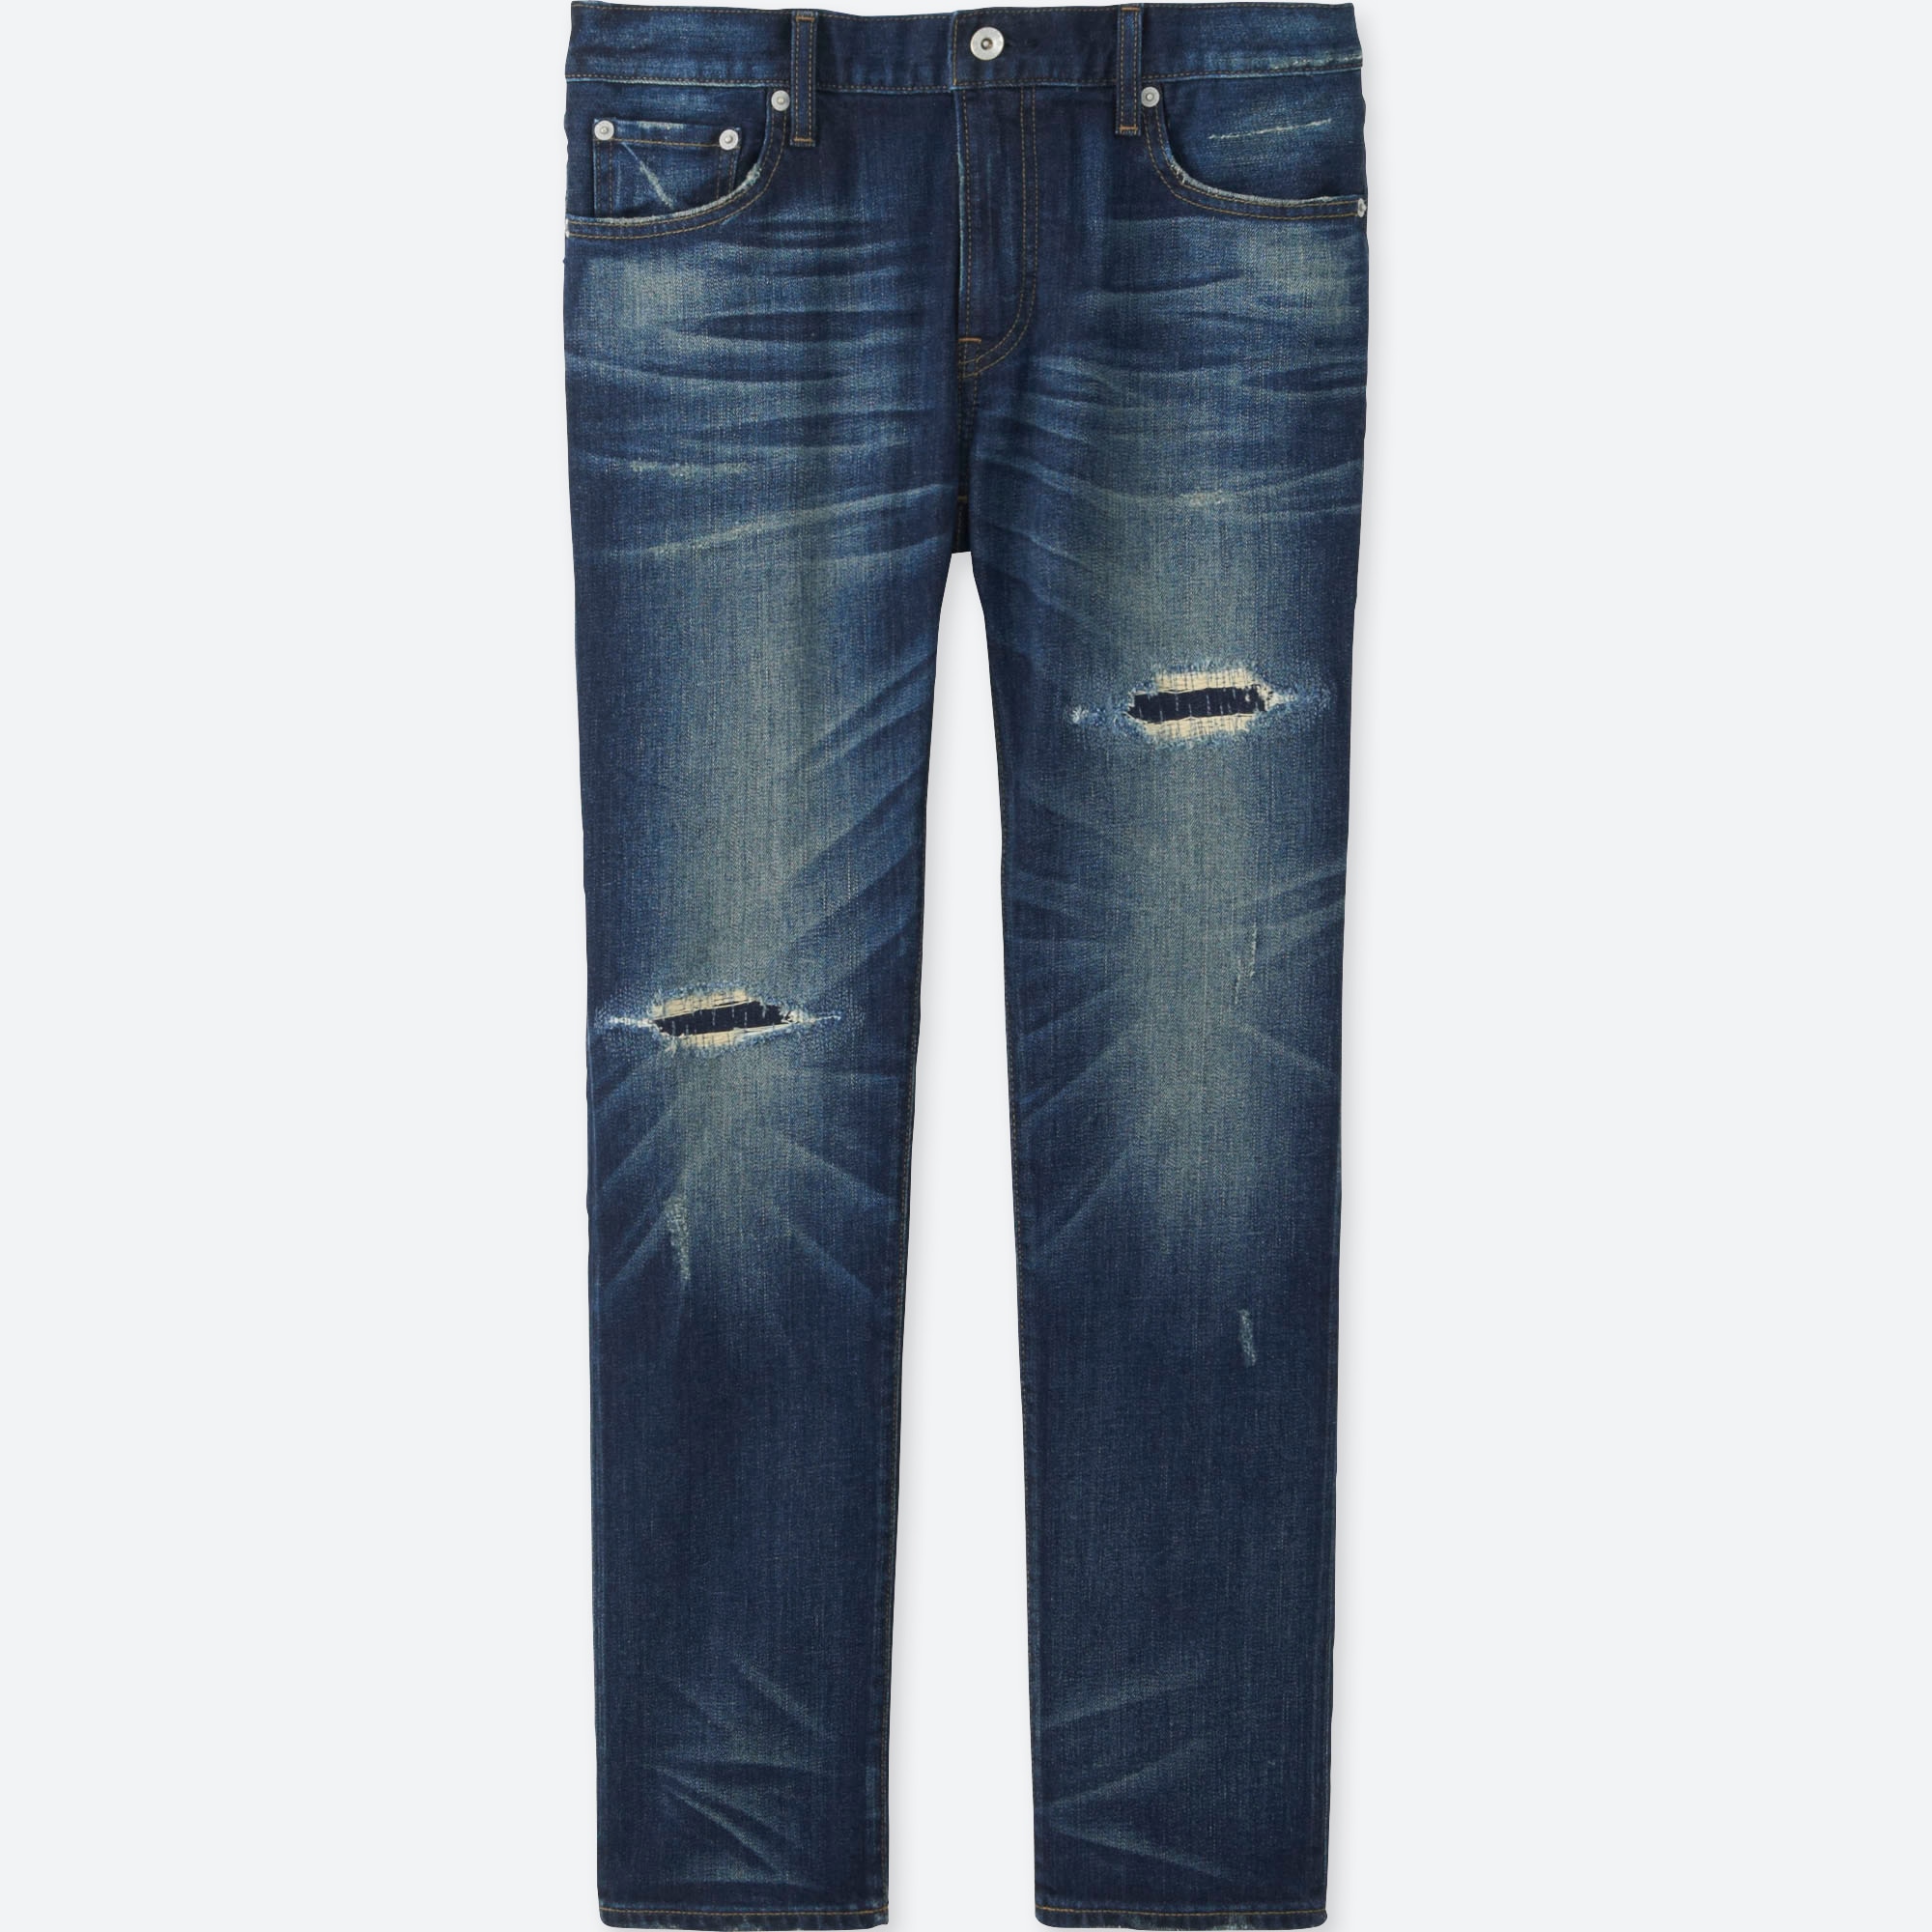 uniqlo distressed jeans